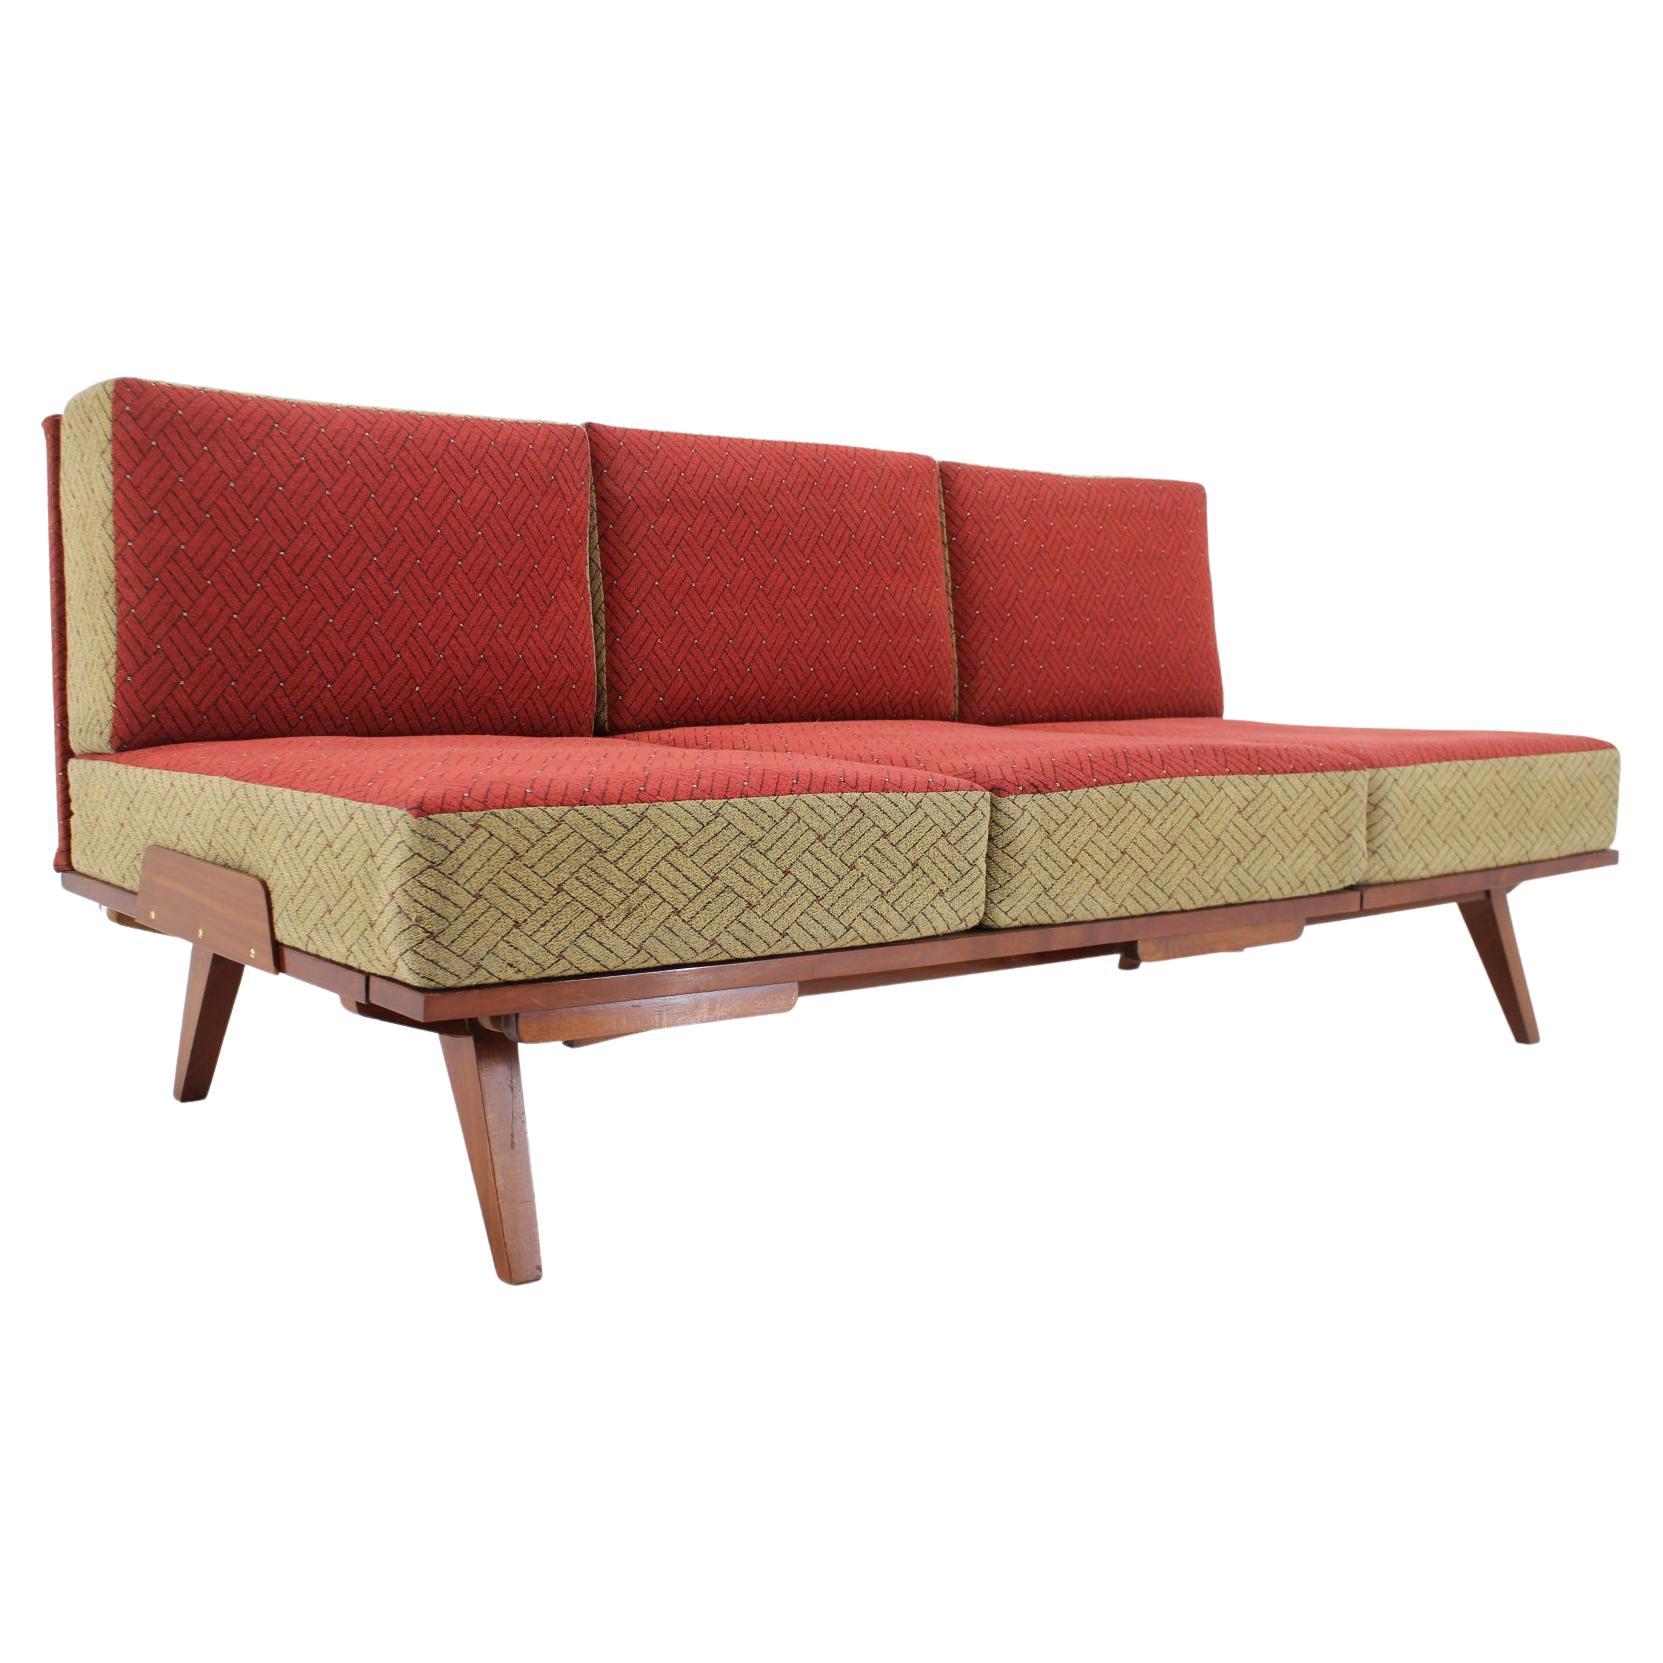 1960s Sofa / Daybad by Tatra, Czechoslovakia For Sale at 1stDibs | 1960s  couch, modern day czechoslovakia, sofa tatra